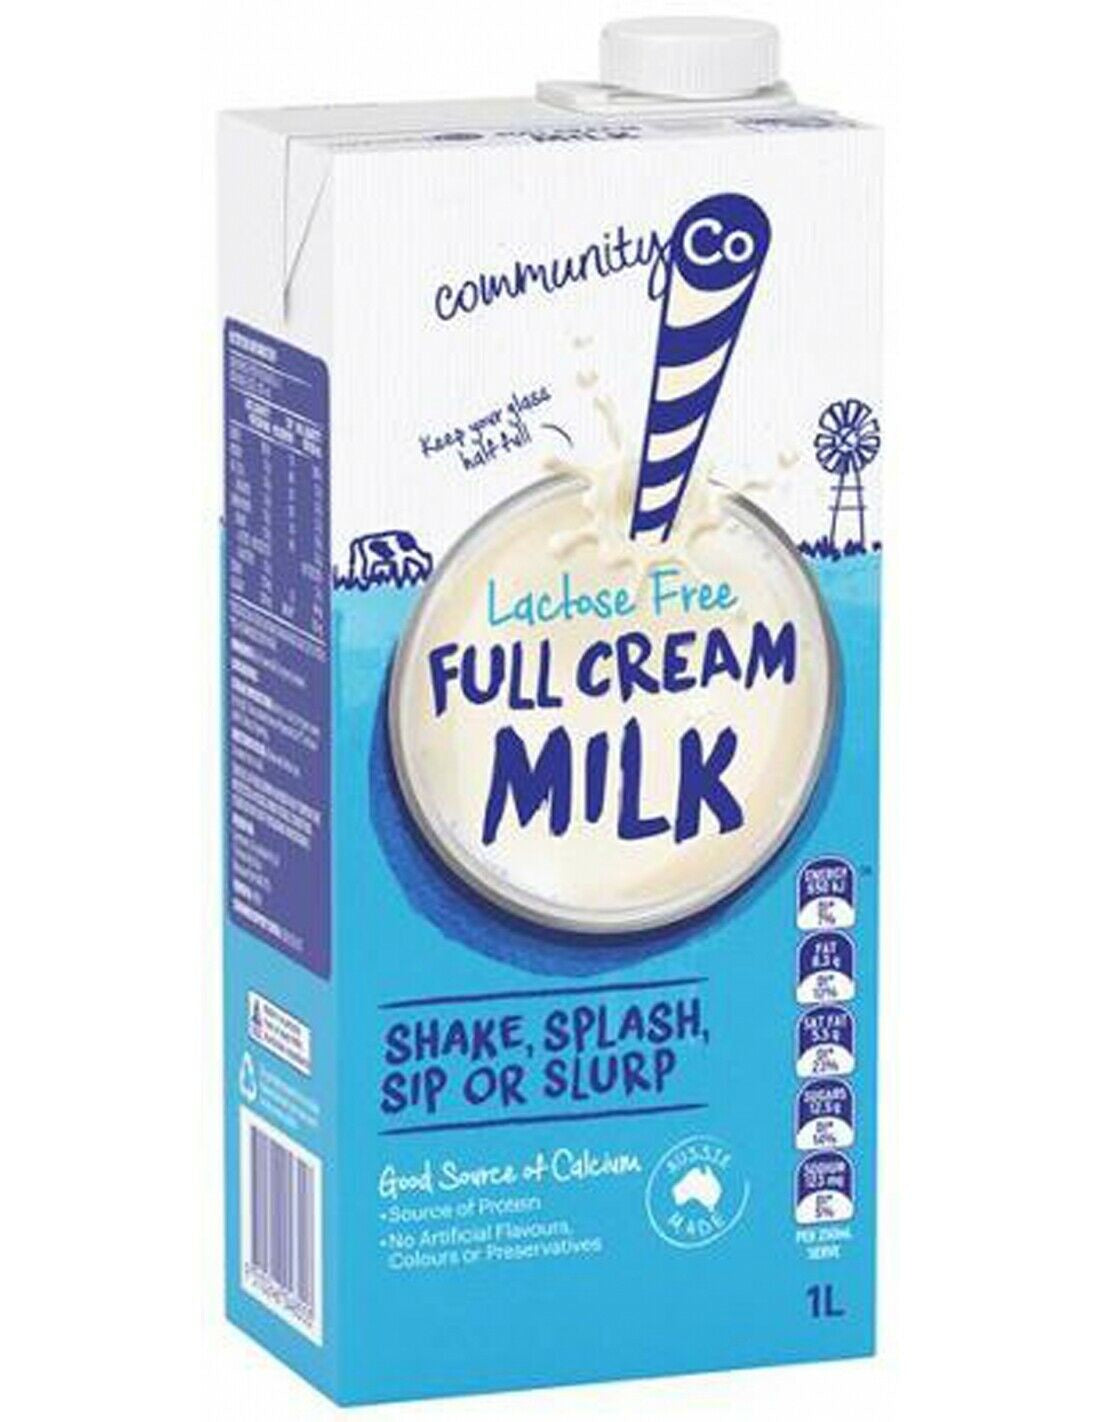 Community Co Lactose Free Full Cream Milk UHT 1L